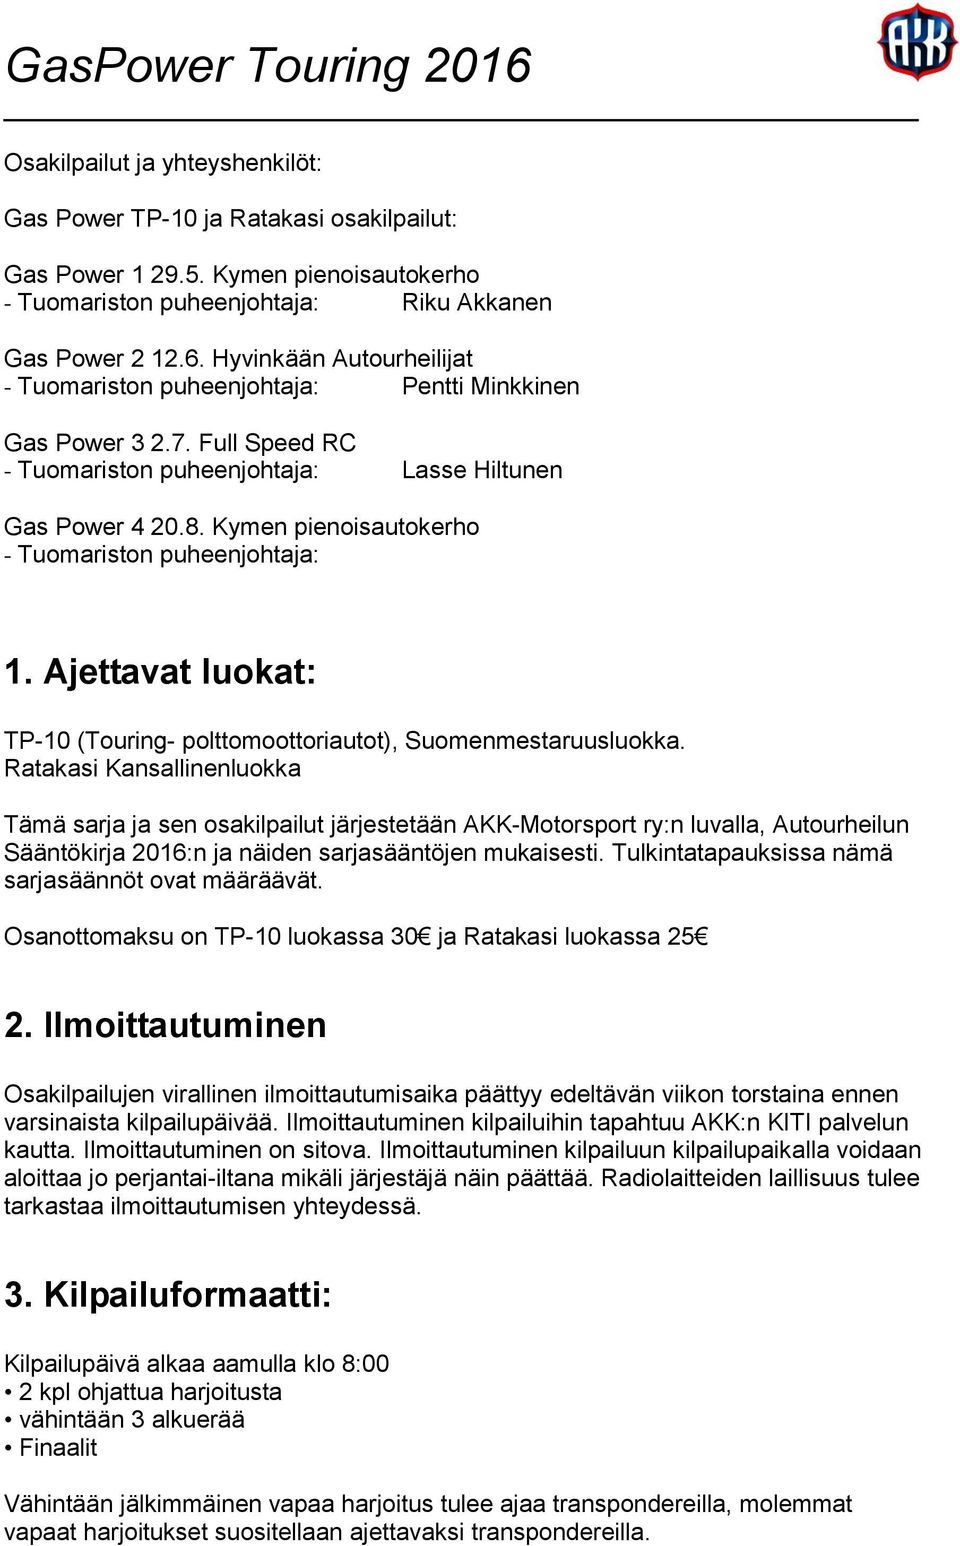 Kymen pienoisautokerho - Tuomariston puheenjohtaja: 1. Ajettavat luokat: TP-10 (Touring- polttomoottoriautot), Suomenmestaruusluokka.